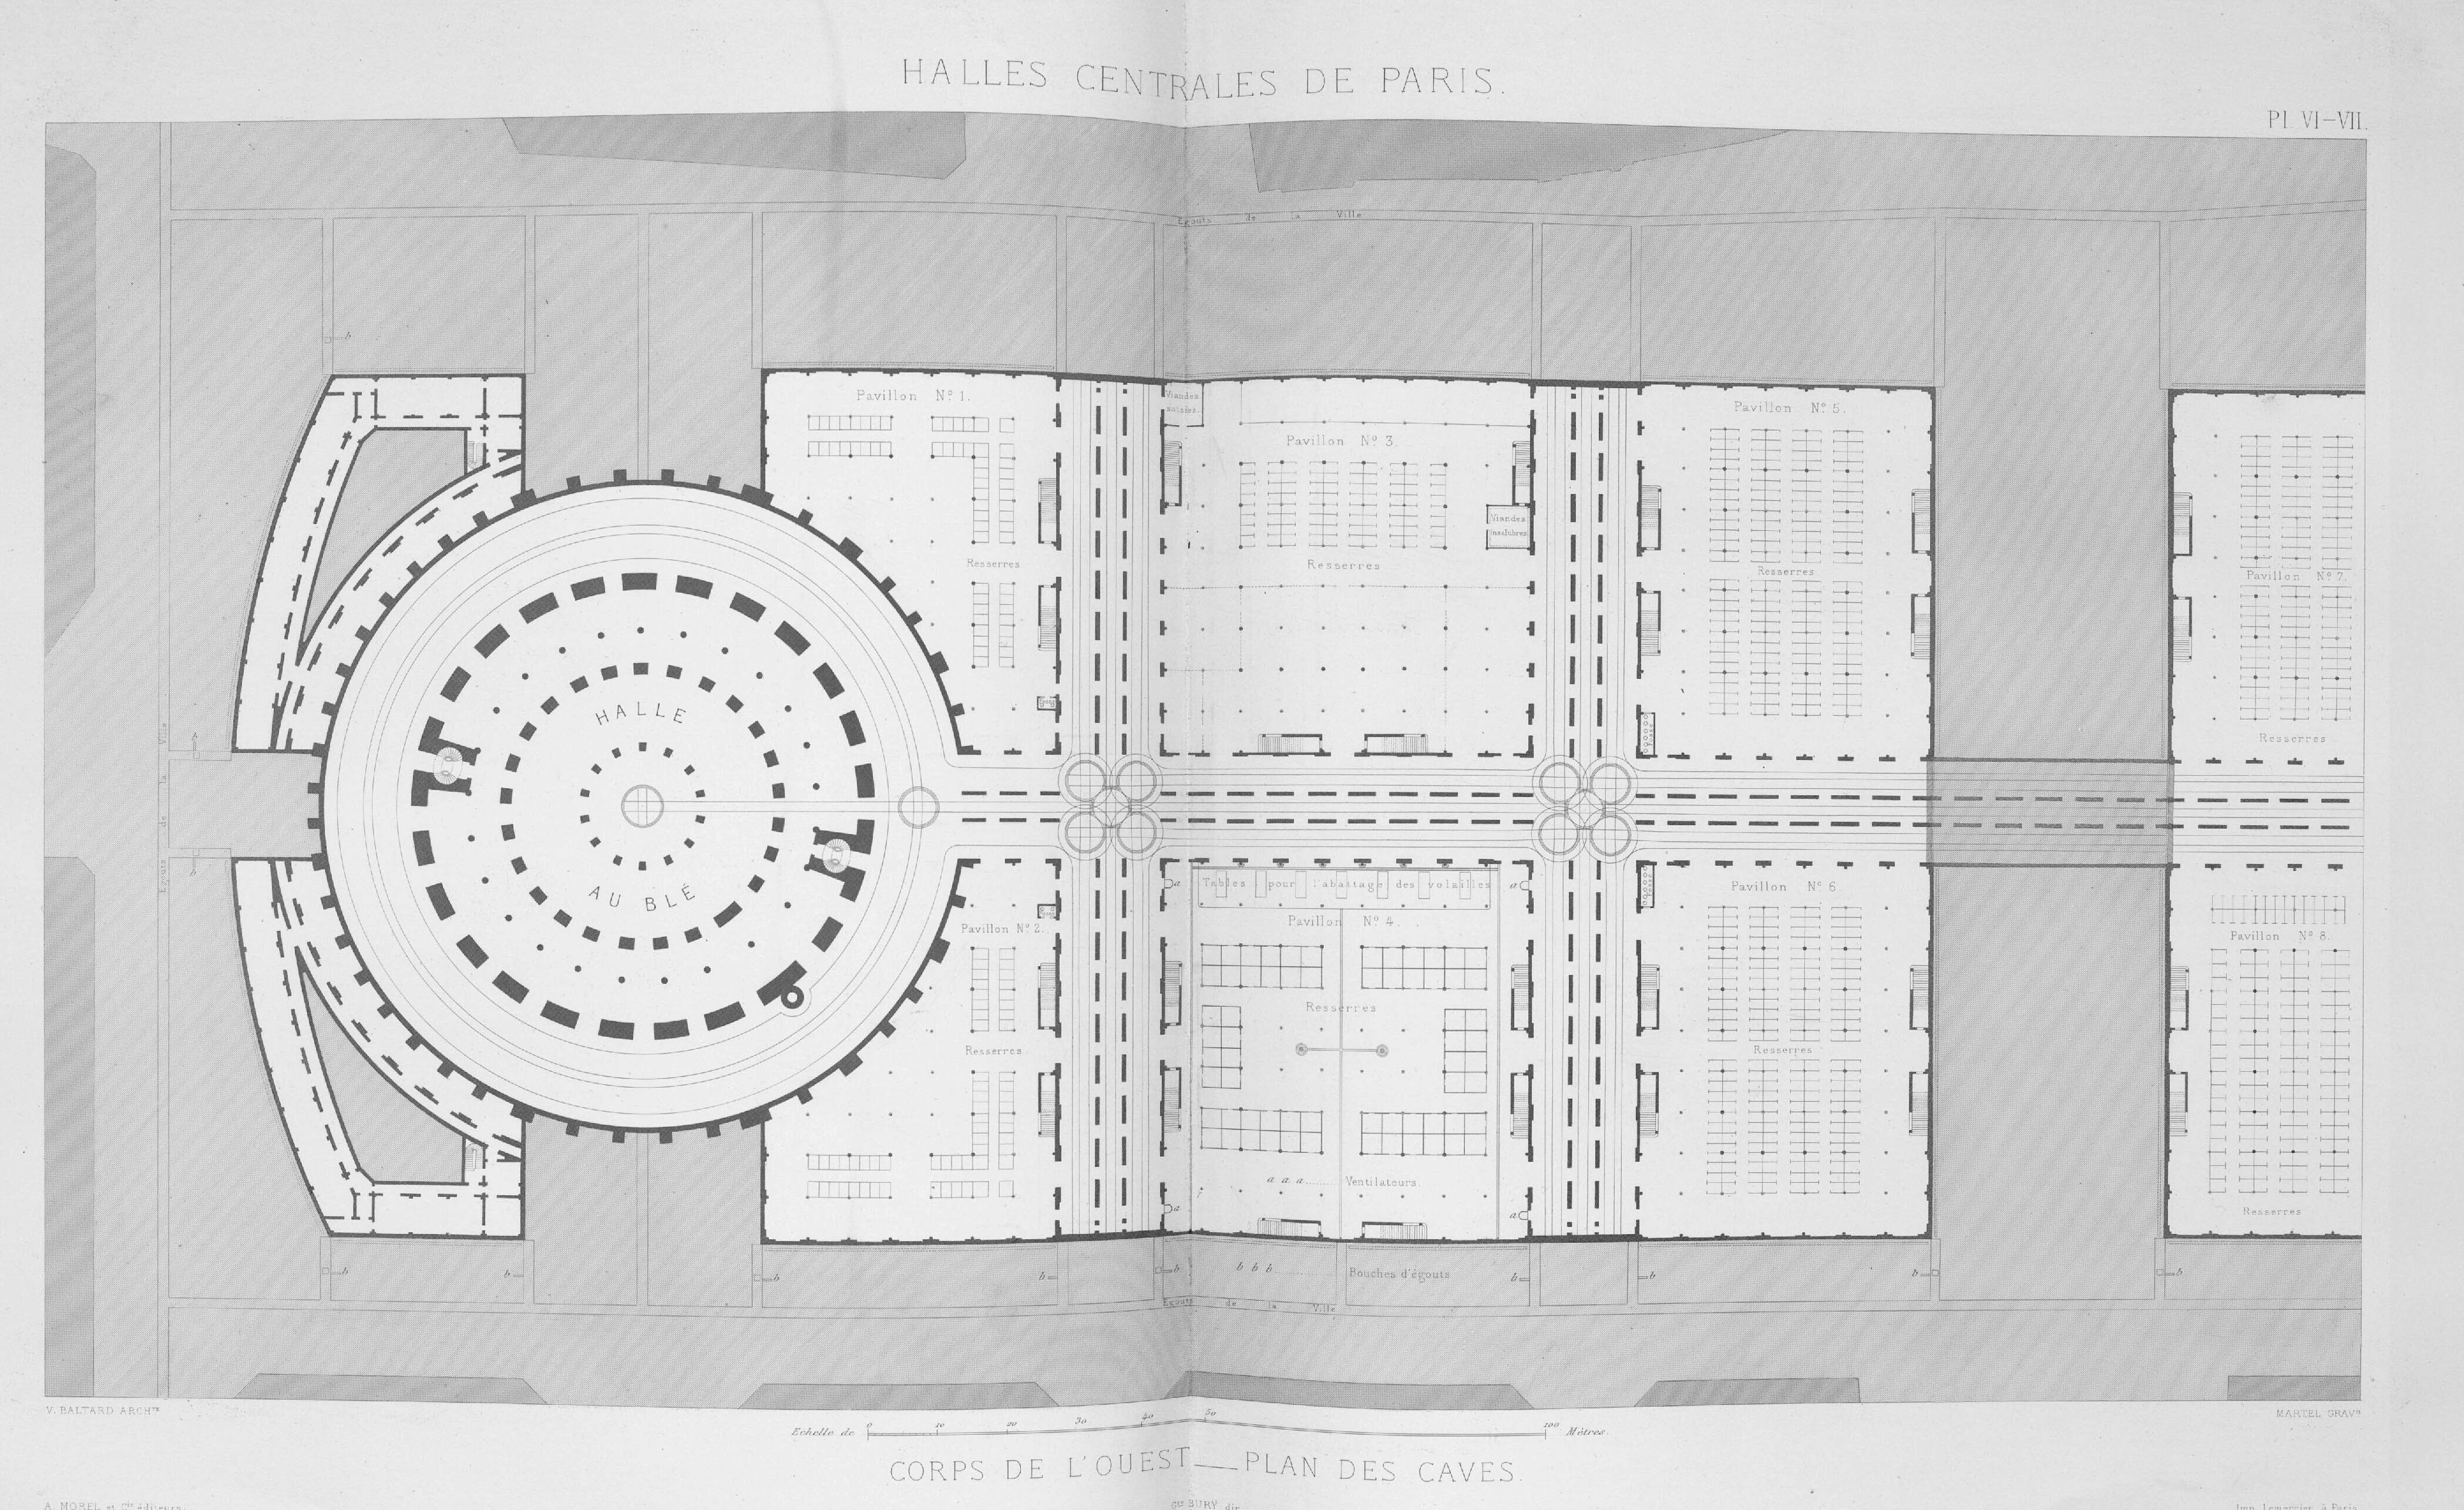 Corps de l’ouest, plan des caves © Cité de l'architecture & du patrimoine/Musée des Monuments français